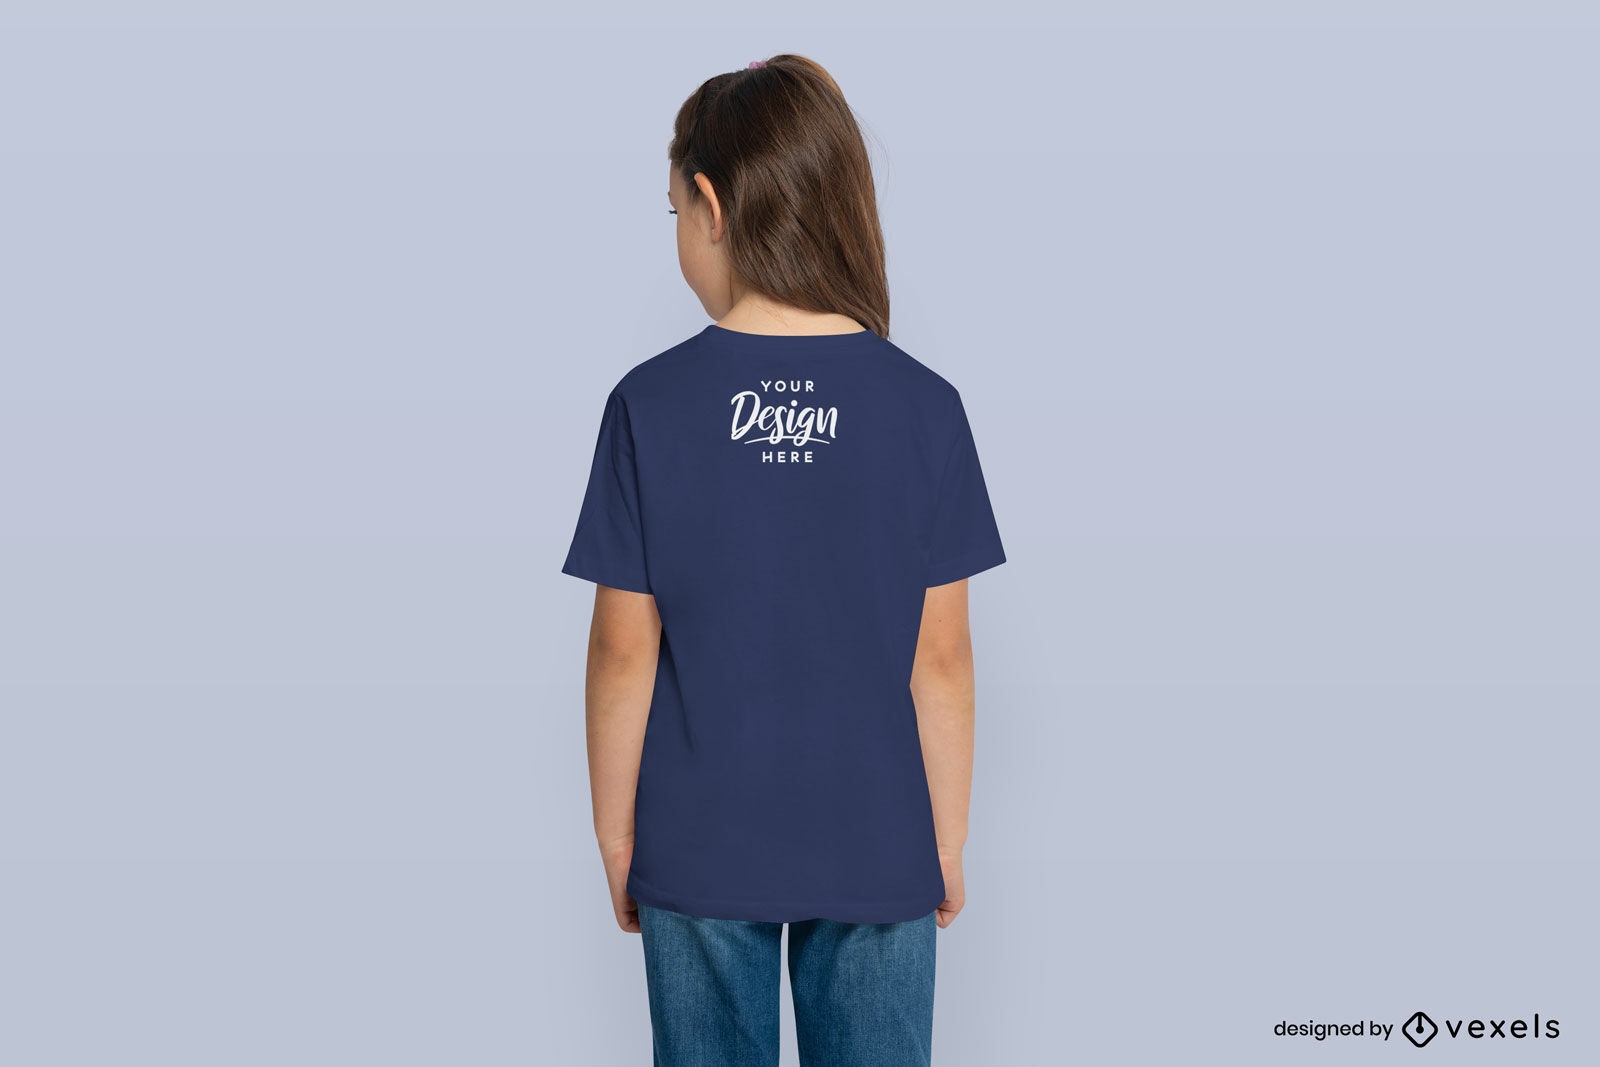 Little girl standing backwards t-shirt mockup